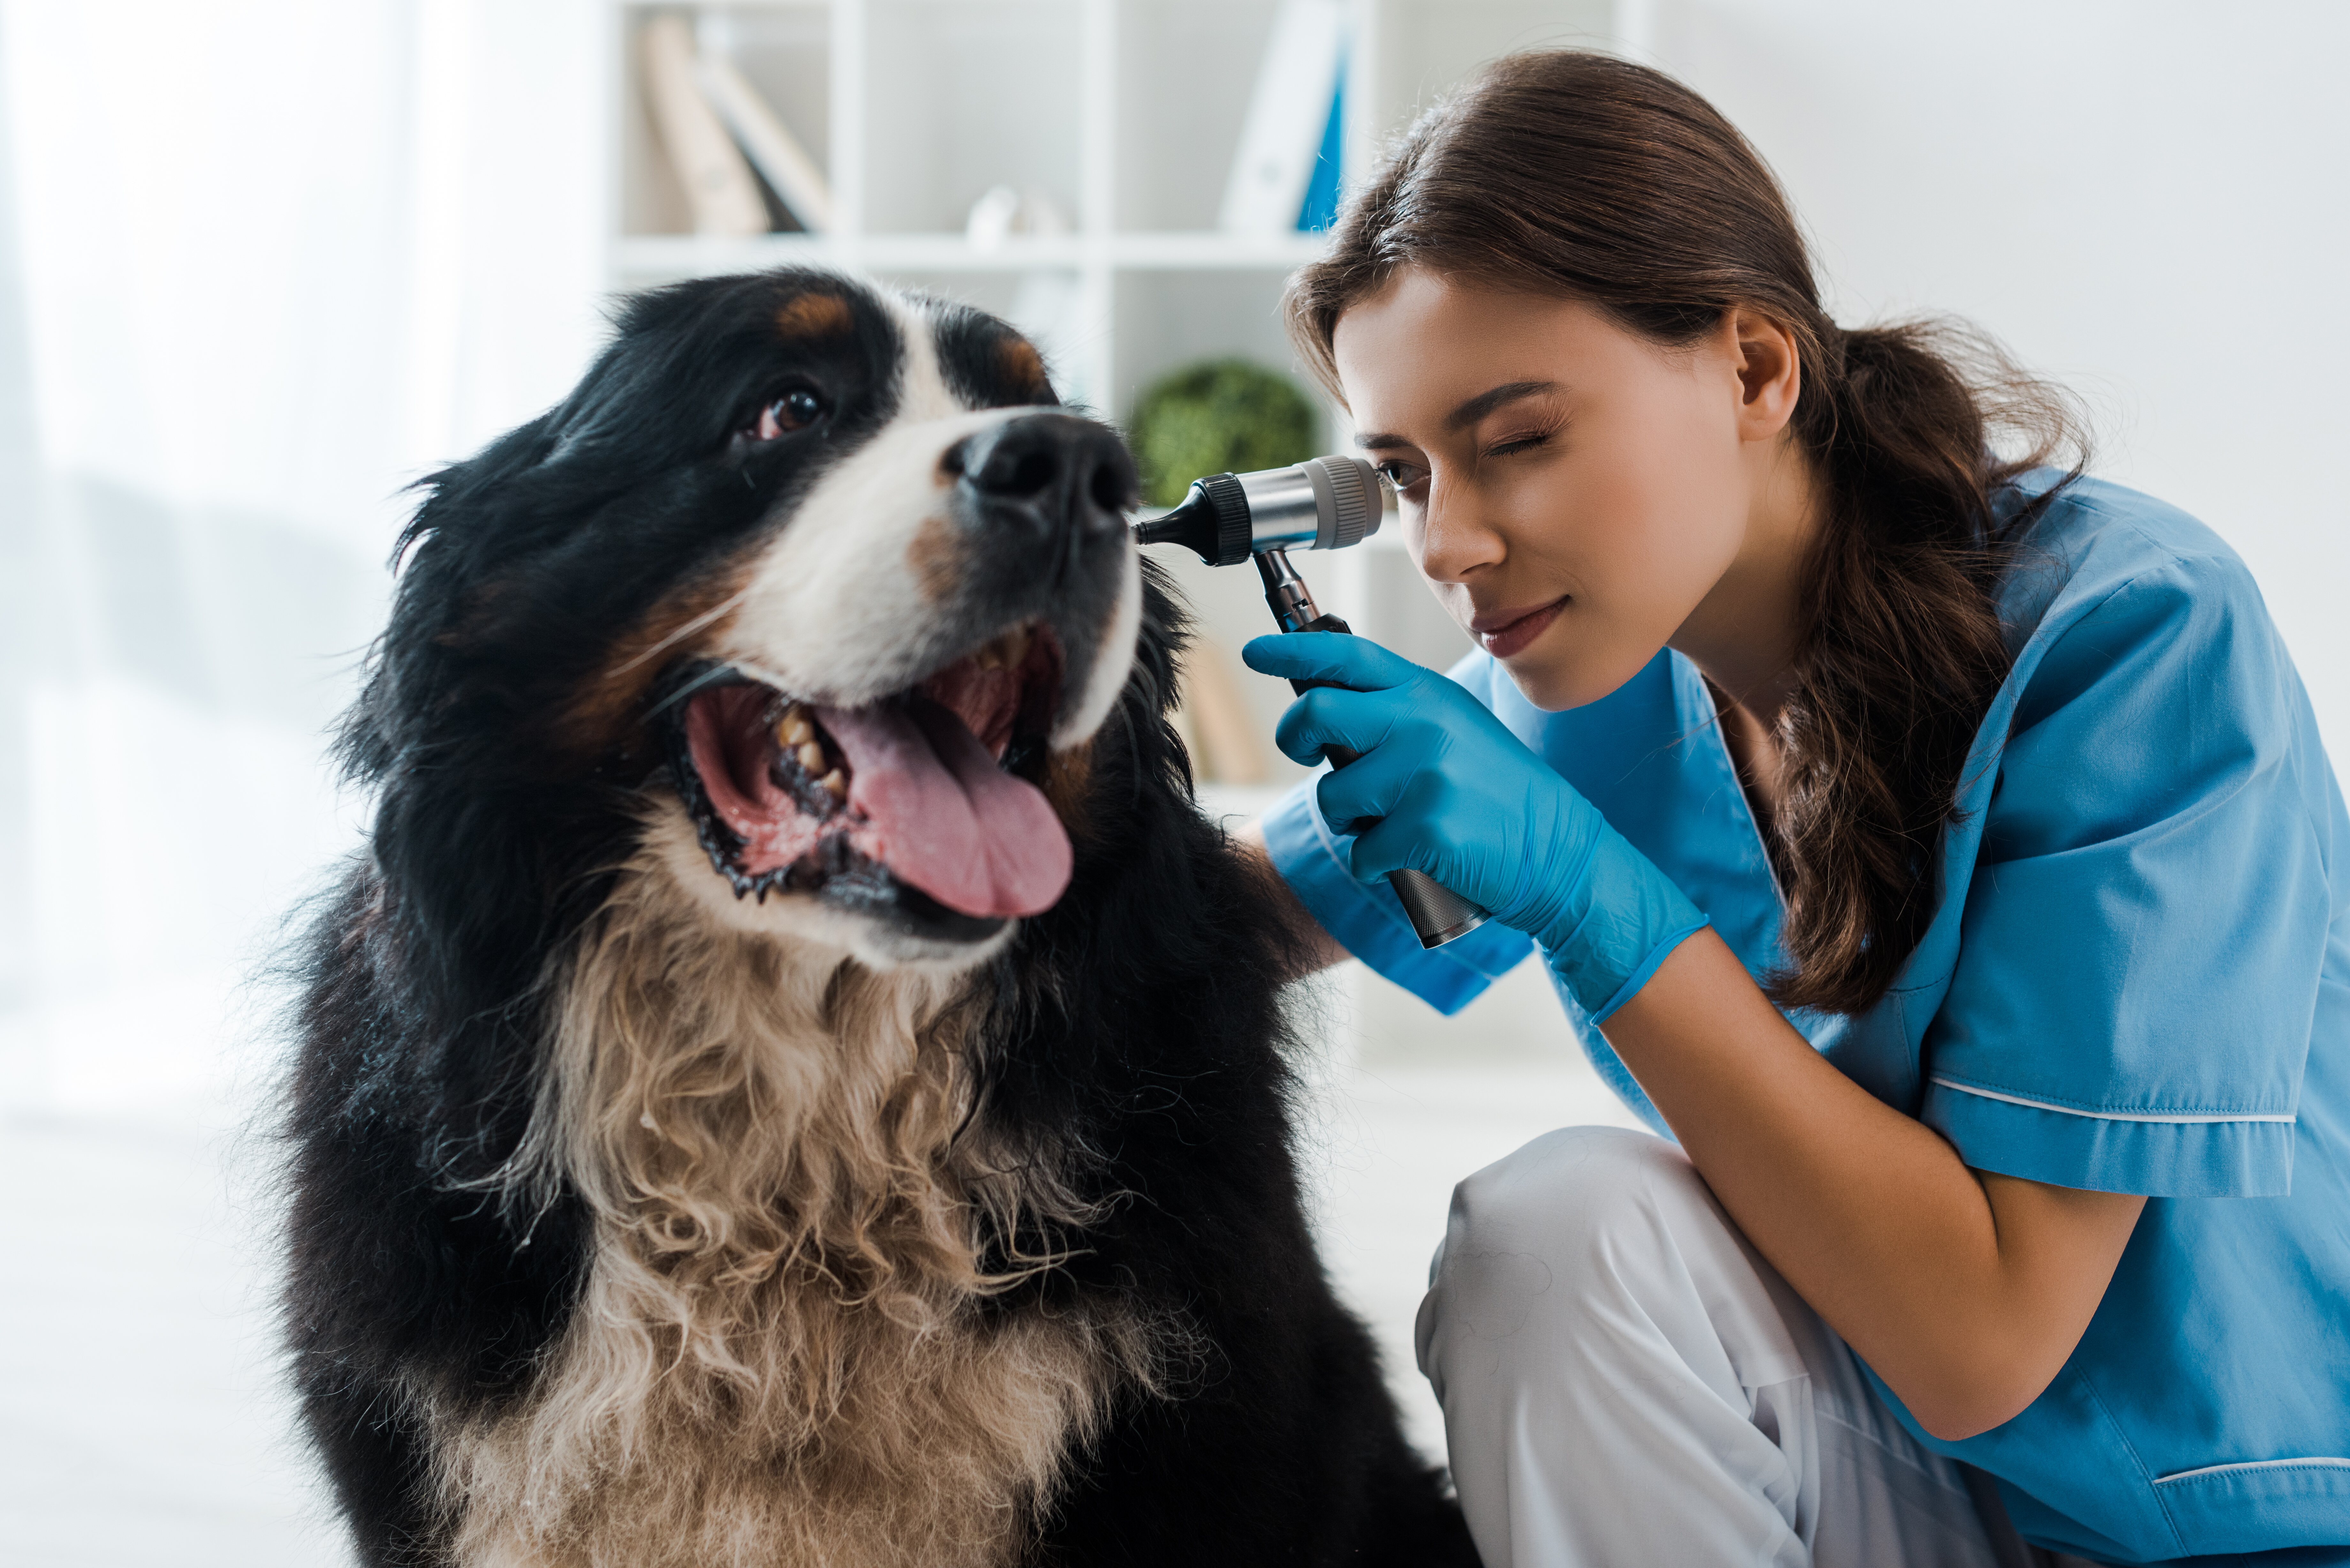 Lleva a tu perro al veterinario para que te certifique si tu perro es sordo en caso de que tengas dudas